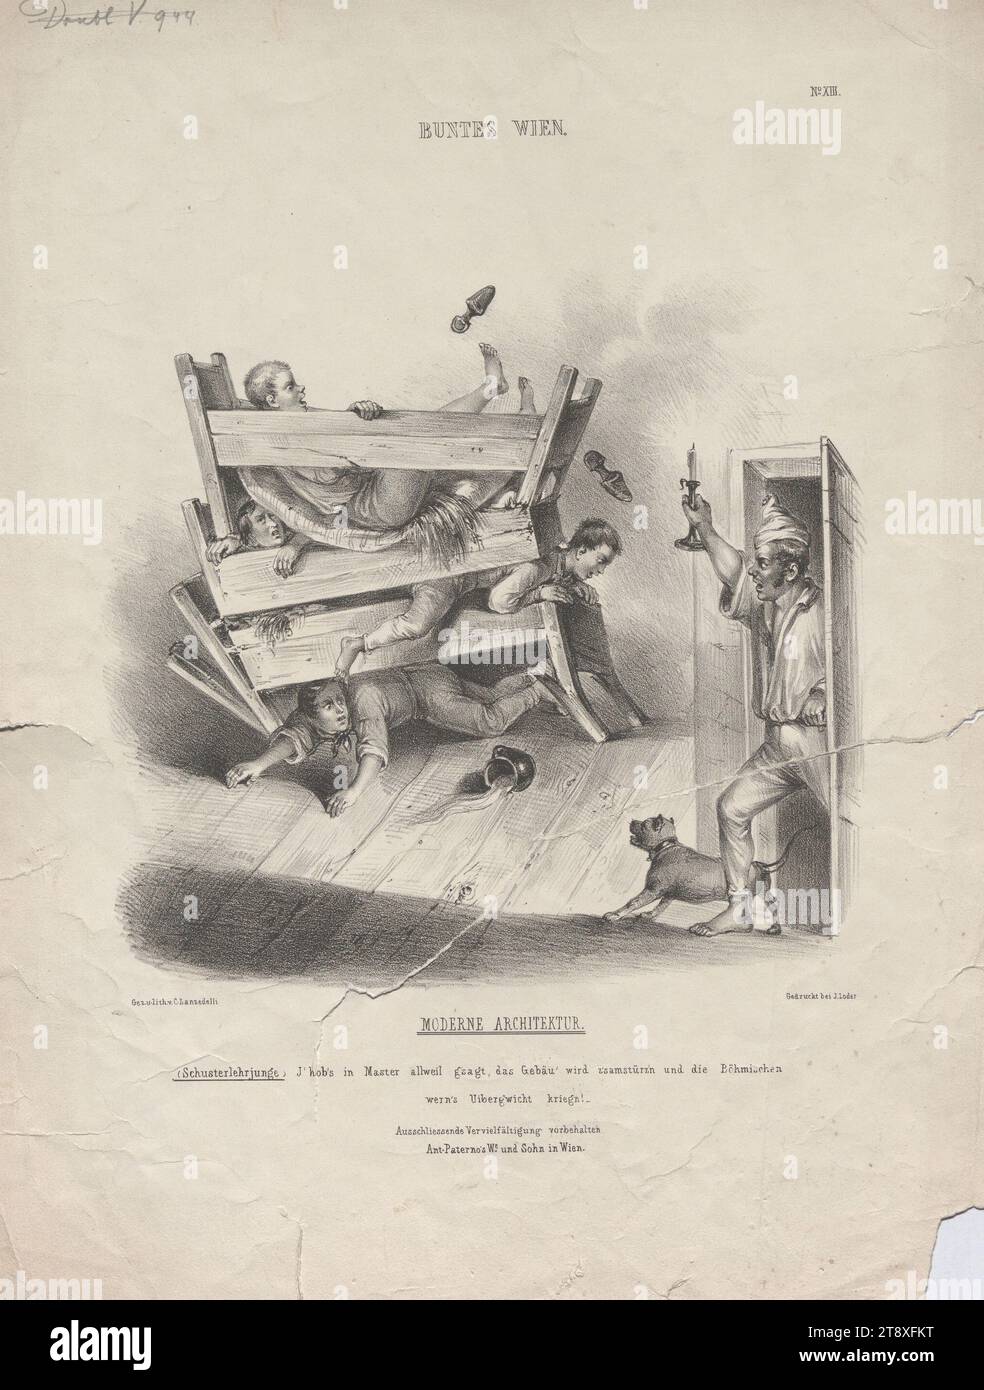 MODERN ARCHITECTURE., I' hob's in Master allweil g'gesagt, das Gebäu' wird z'samstürz'n und die Böhmischen, wern's Uiberg'wicht kriegn (caricature on the nationality conflicts of 1848), Karl (Carl) Lanzedelli (Lancedelli) (Lanzedelly) (1815-1865), lithographer, Jakob Loder, Printer, Anton Paterno's widow, publishing house, 1848, paper, chalk-manner lithograph, height 35, 9 cm, width 27, 2 cm, Caricature, Satire, Politics, Revolutions of 1848, 1849, bed, The Vienna Collection Stock Photo